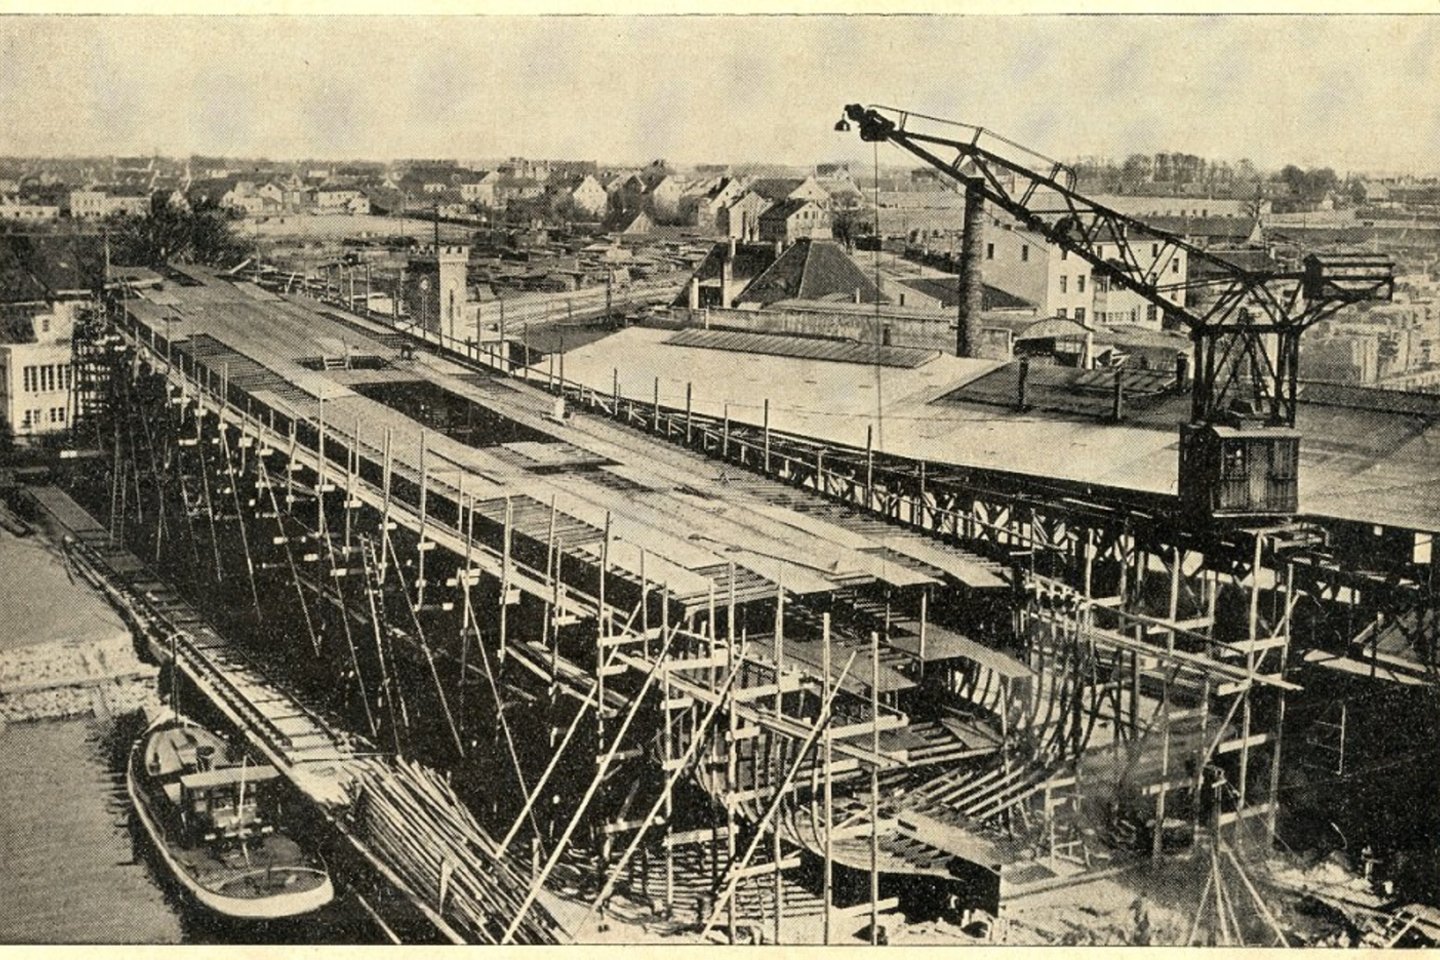 Tarpukariu elinge buvo statomi ir remontuojami dideli laivai.1938 m.<br> "Jūros" žurnalo nuotr.